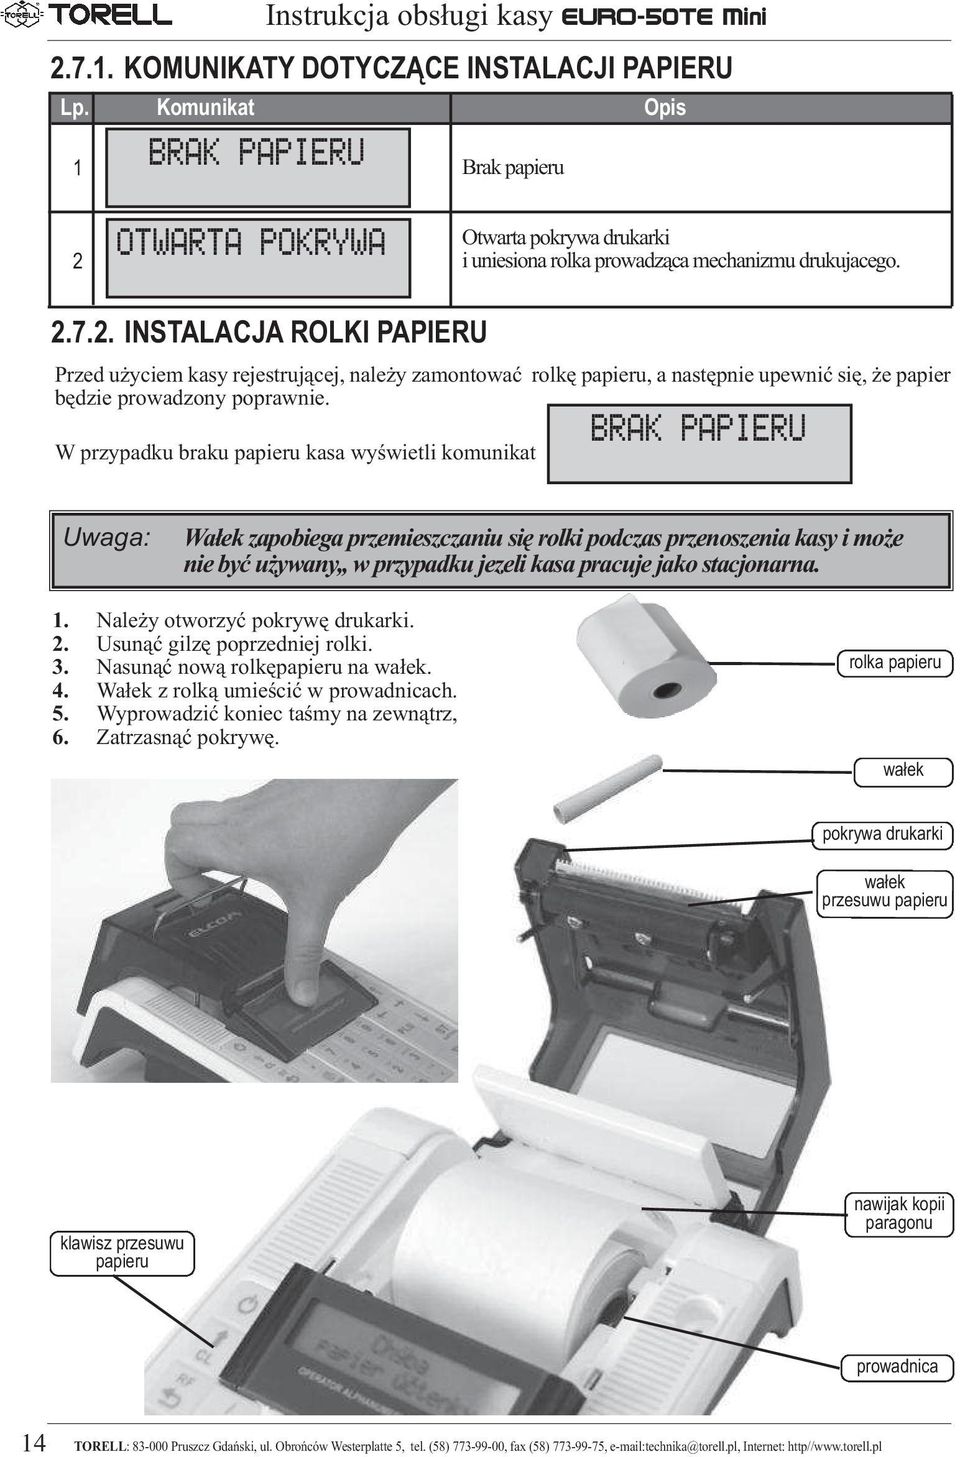 OTWARTA POKRYWA Otwarta pokrywa drukarki i uniesiona rolka prowadząca mechanizmu drukujacego. 2.